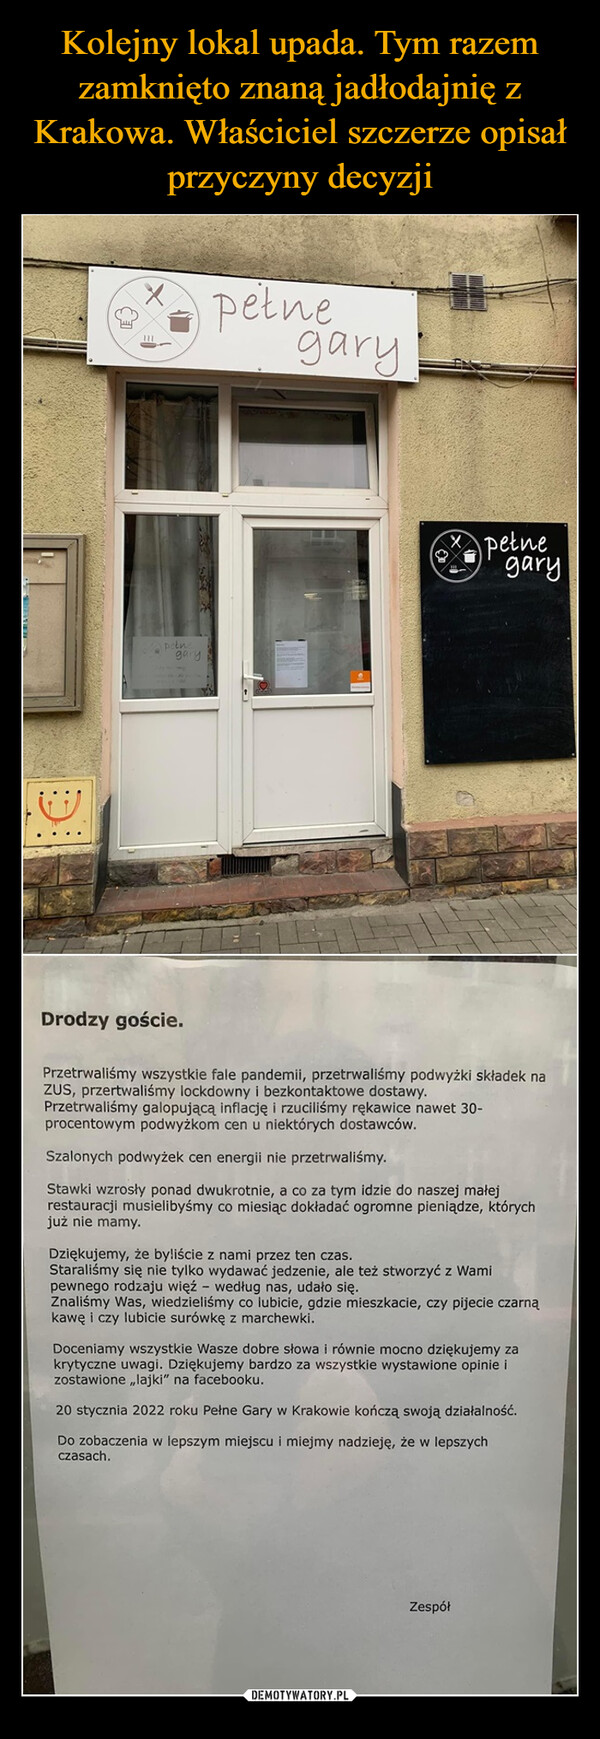 Kolejny lokal upada. Tym razem zamknięto znaną jadłodajnię z Krakowa. Właściciel szczerze opisał przyczyny decyzji